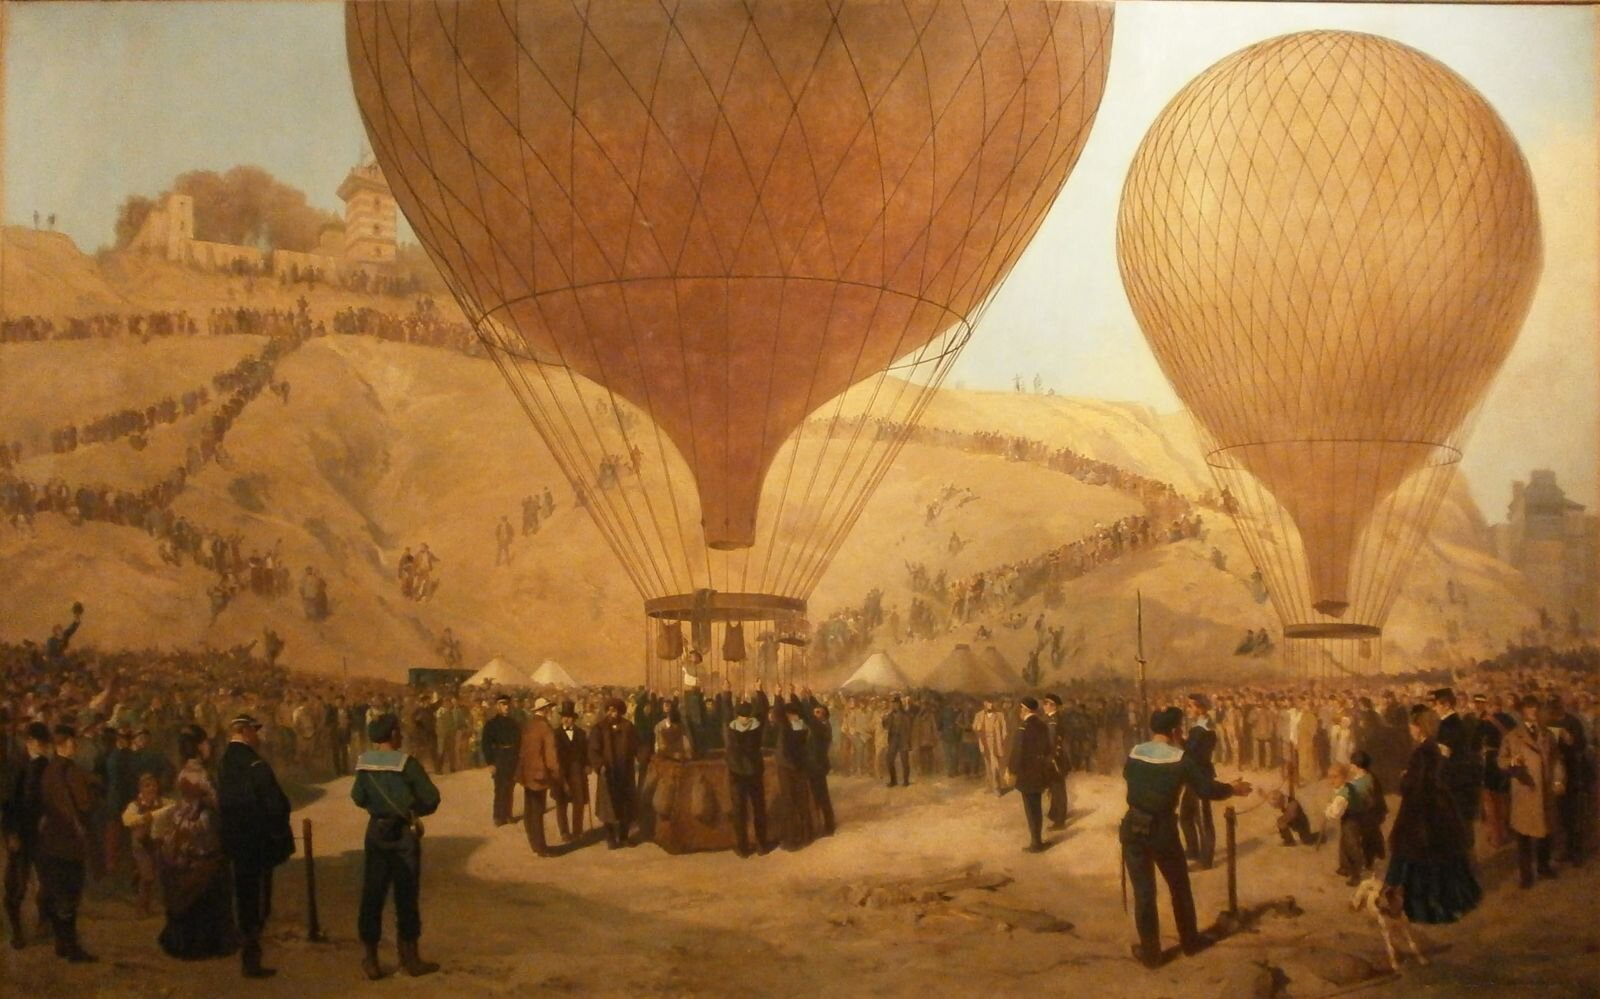 Départ de Léon Gambetta pour Tours sur le ballon l'"Armand-Barbès", le 7 octobre 1870, à Montmartre, by Jules Didier, c. 1871. Musée Carnavalet (source).